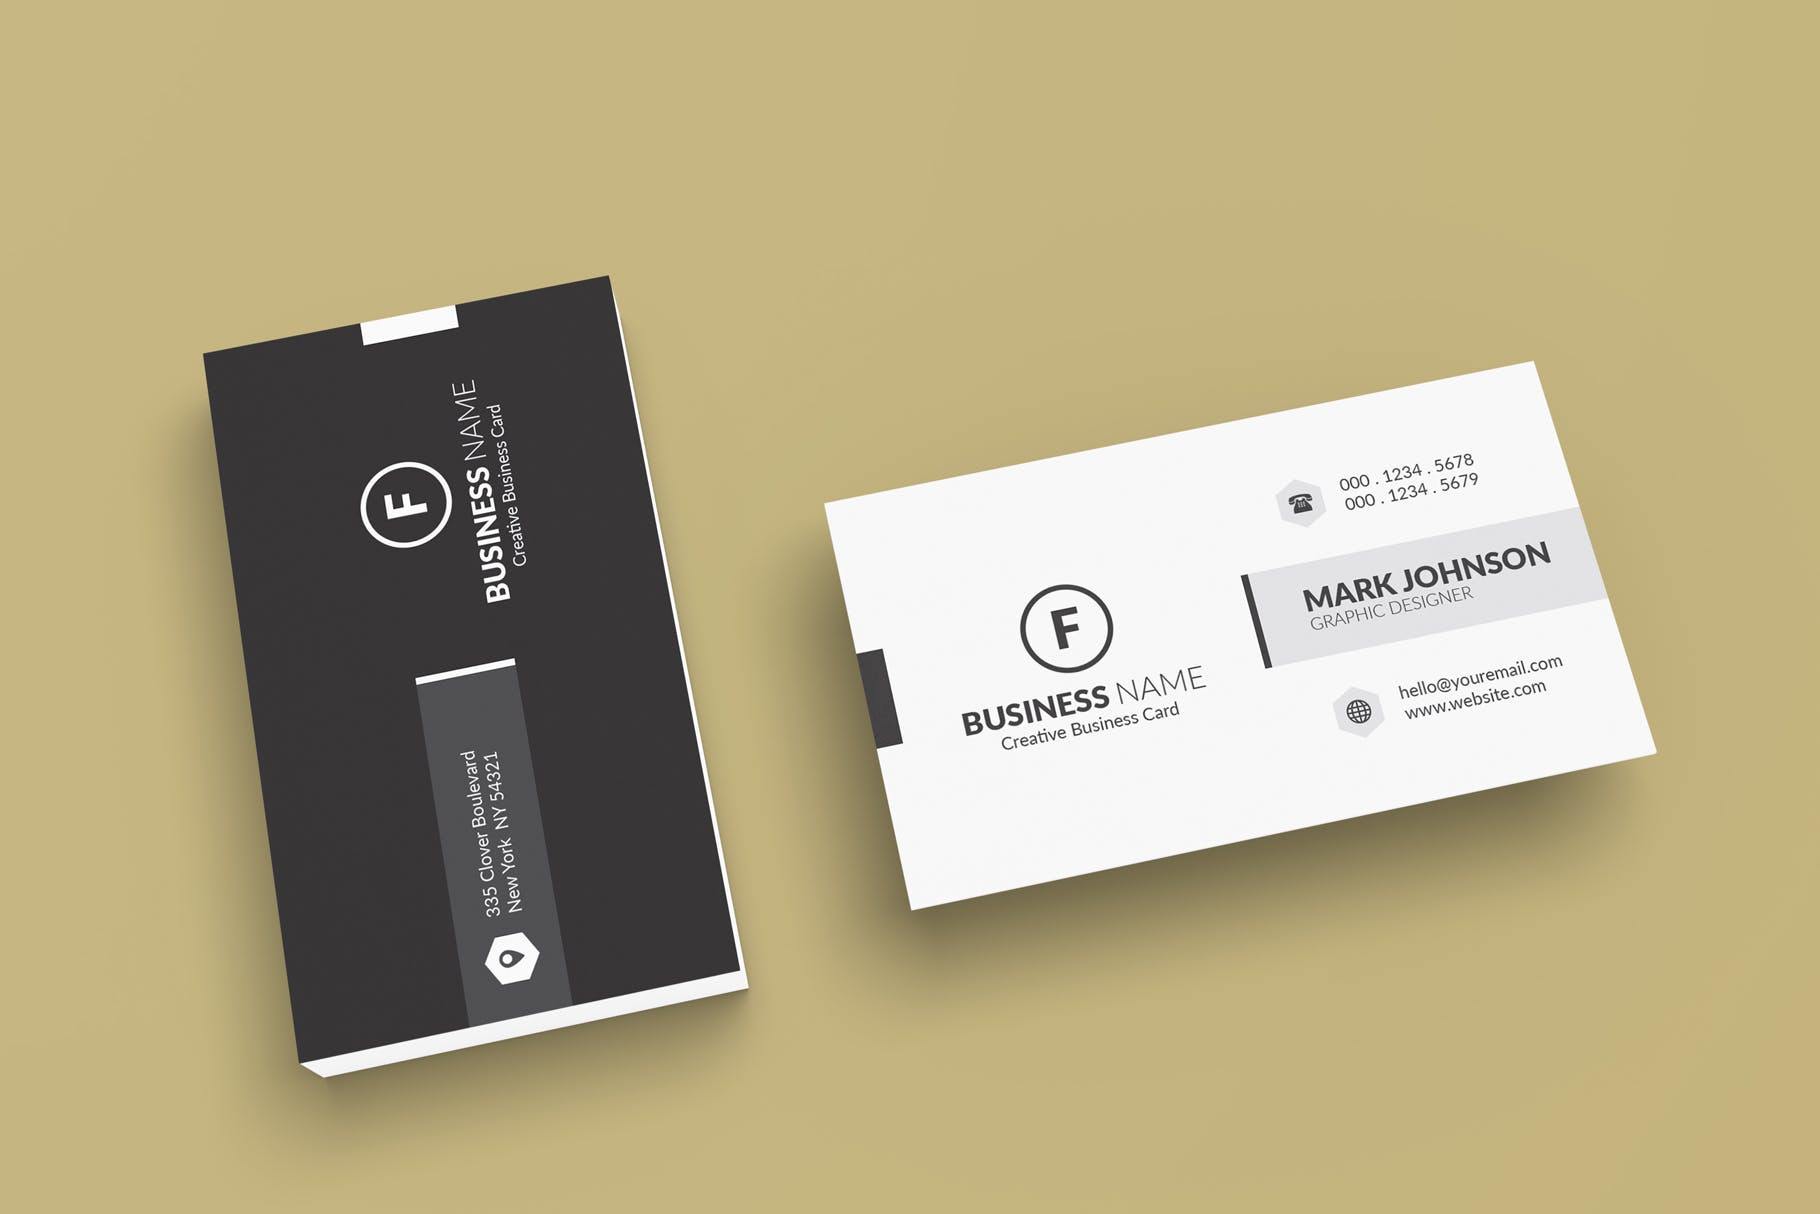 极简设计风格名片设计效果图素材库精选 Minimalist Business Cards Mockup插图(3)